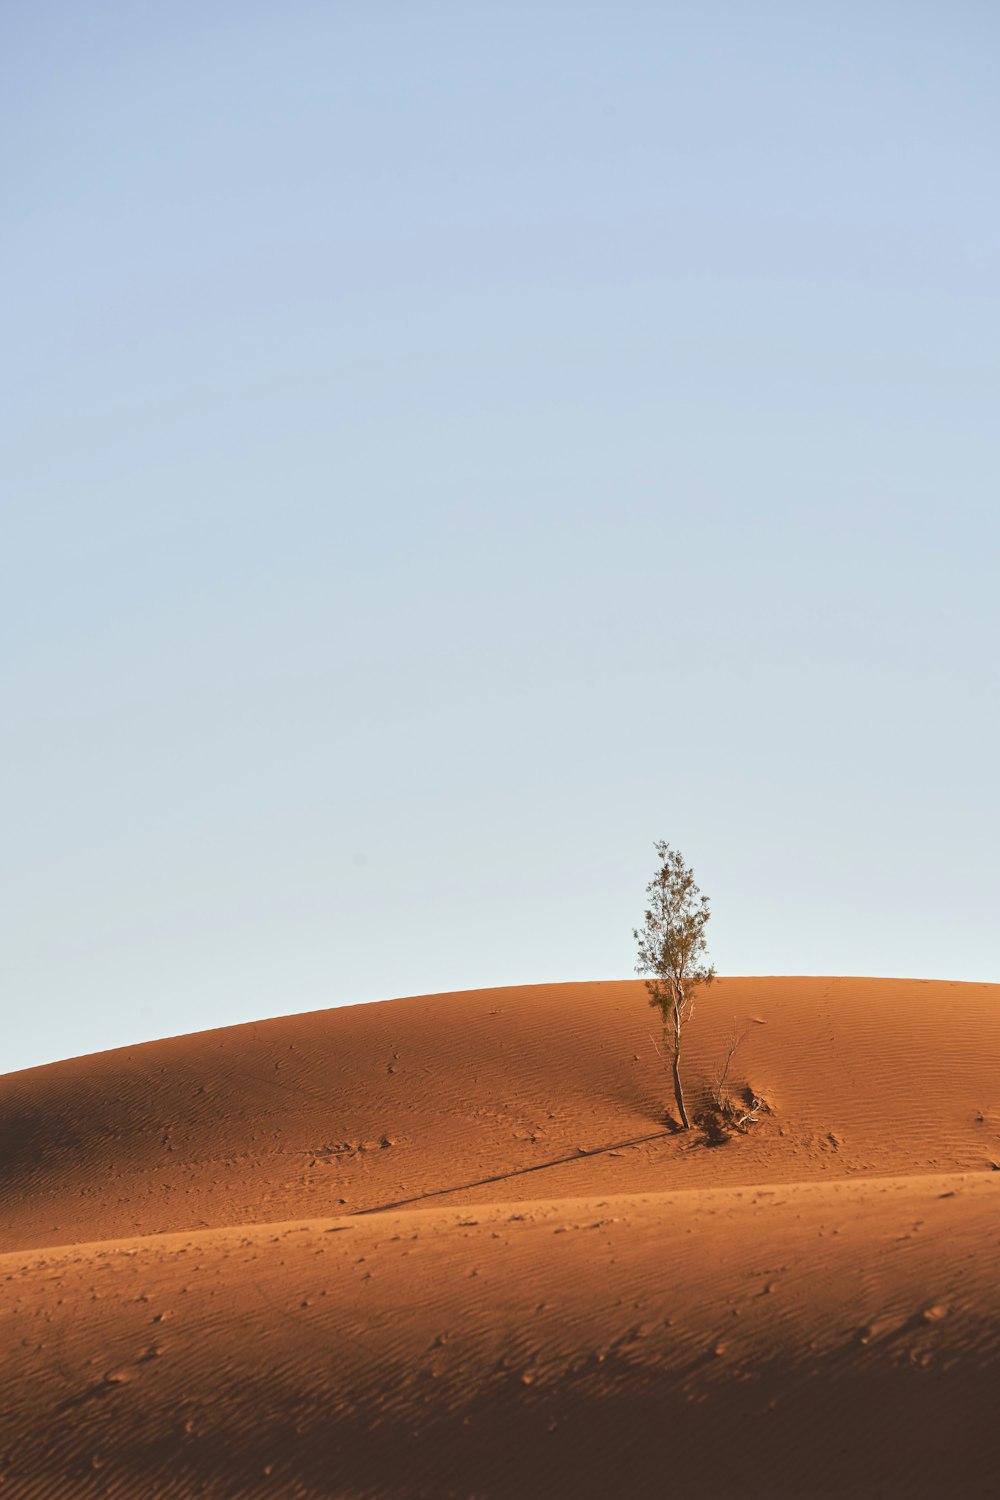 brown bare tree on desert under blue sky during daytime